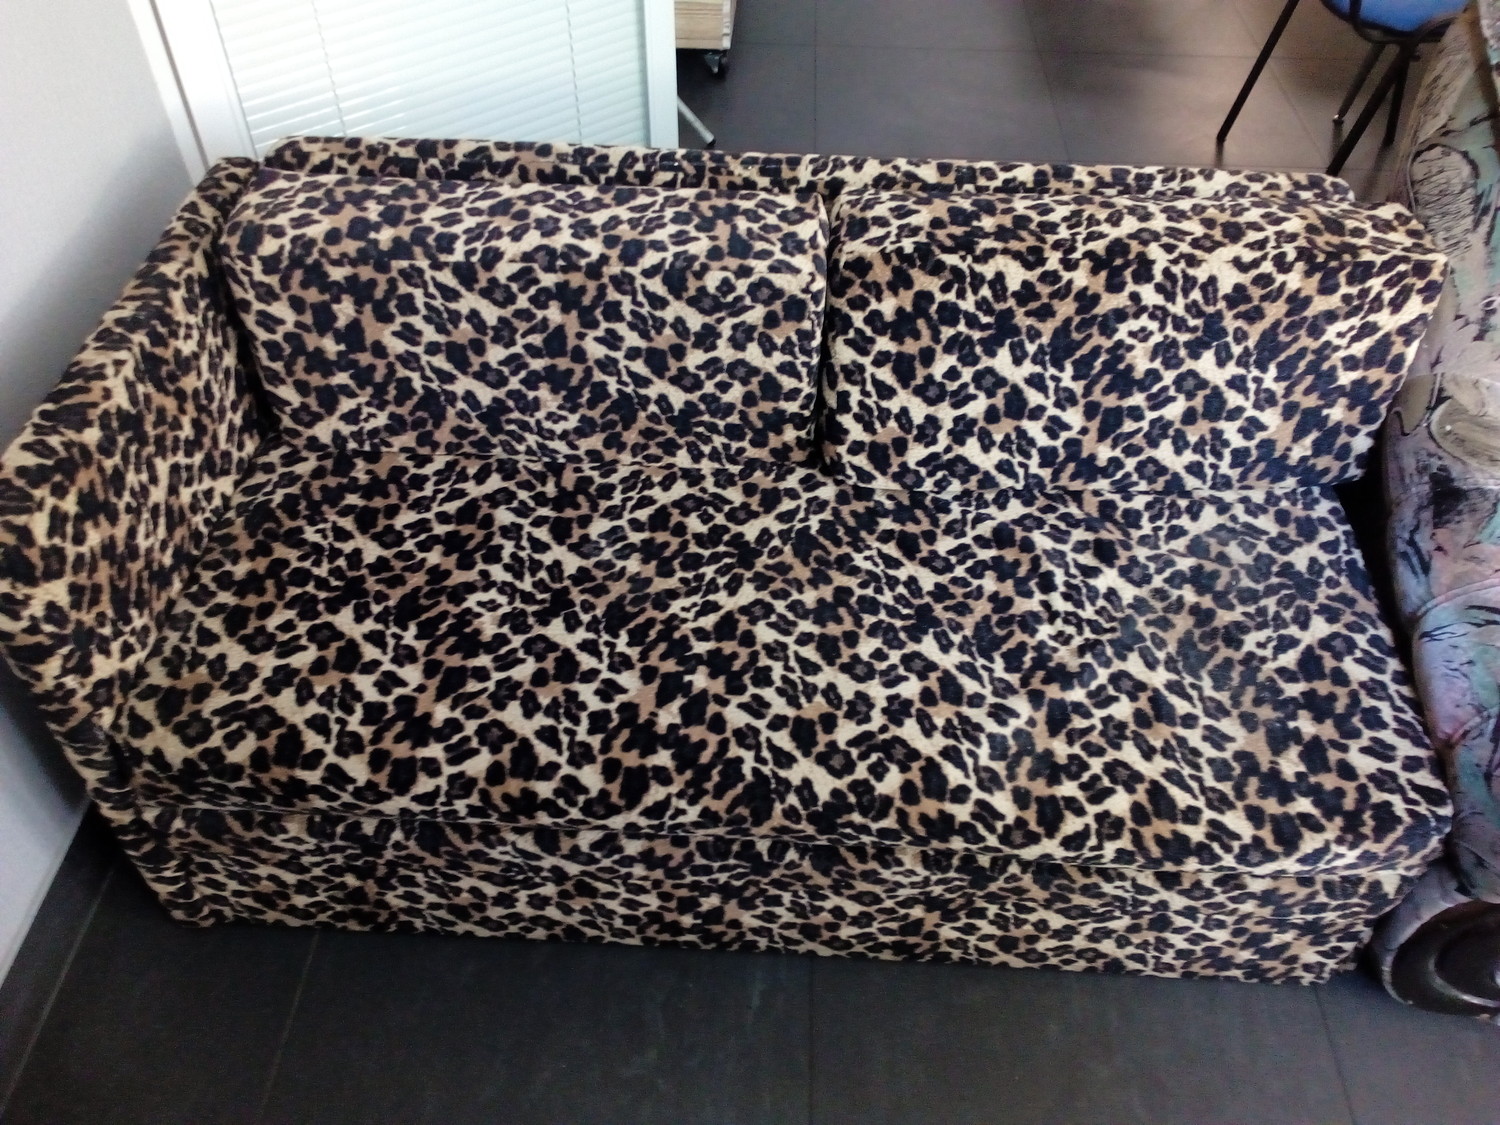 Леопард на диване